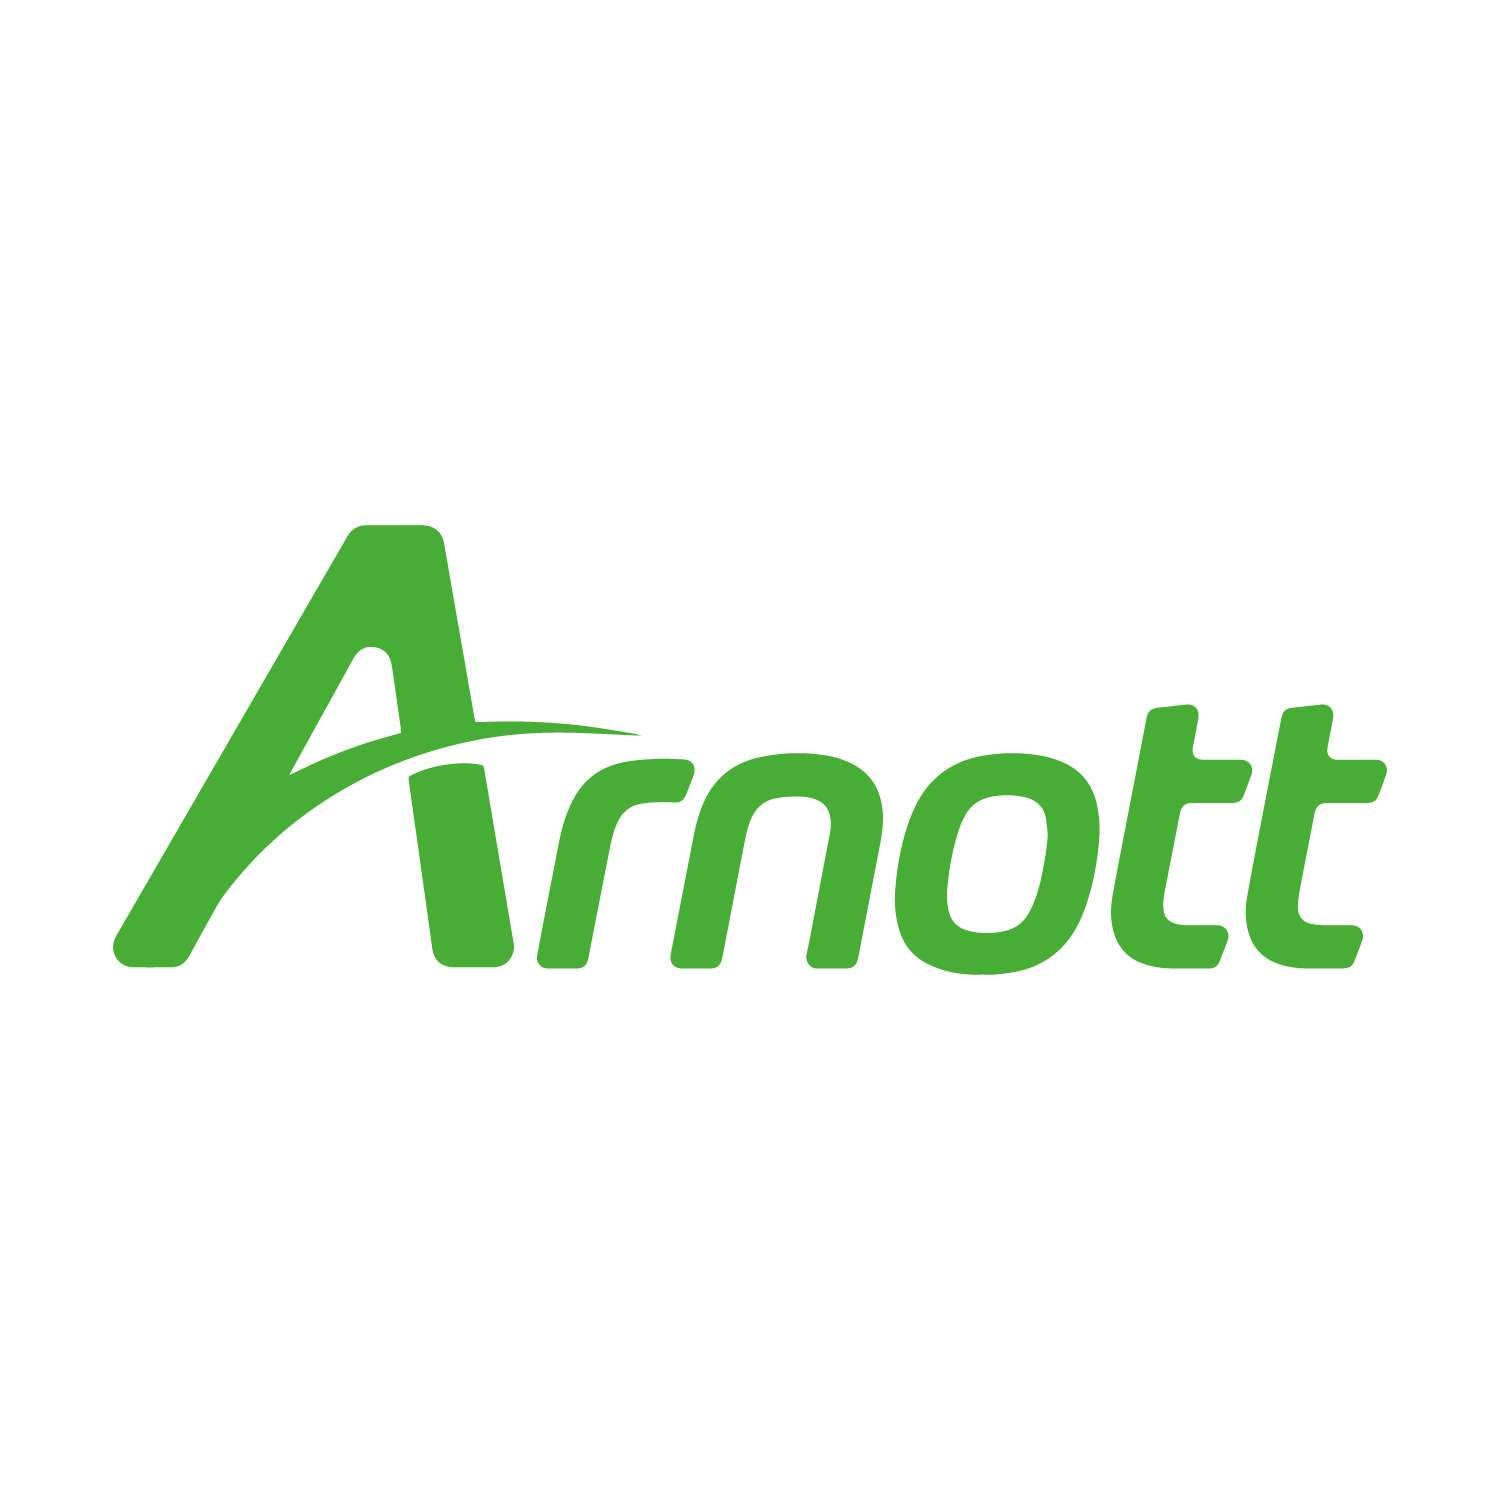 logo Arnott